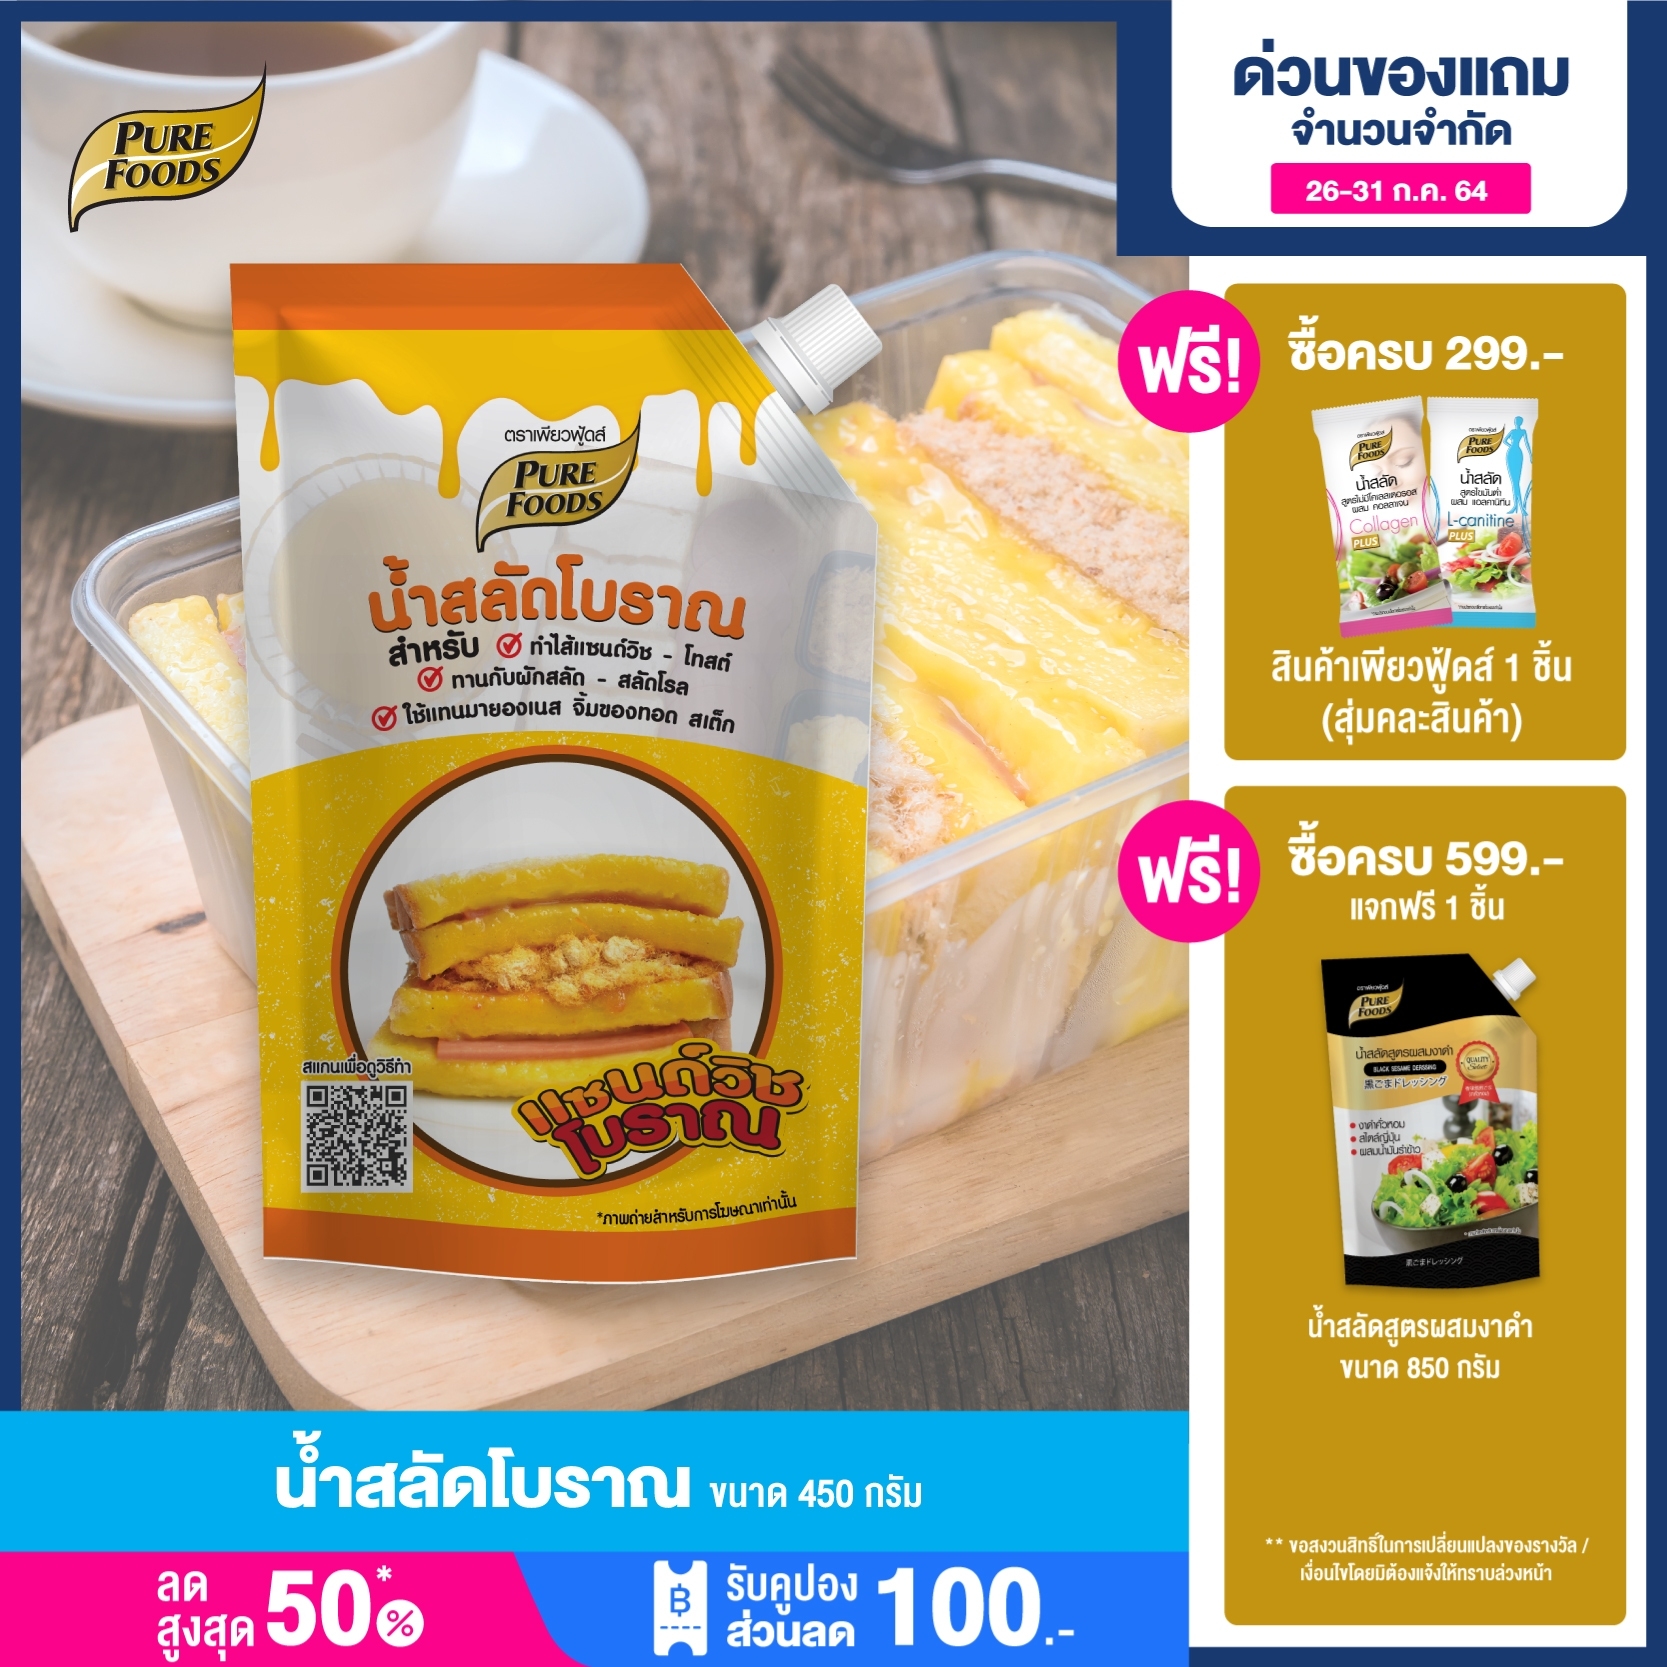 น้ำสลัด  น้ำสลัดโบราณ แซนวิซโบราณ (Thai sandwich) แซนวิช สลัดผัก ราคาถูก สลัดโบราณ สำเร็จรูป ตราเพียวฟู้ดส์ Purefoods   ขนาด 450 พร้อมส่ง